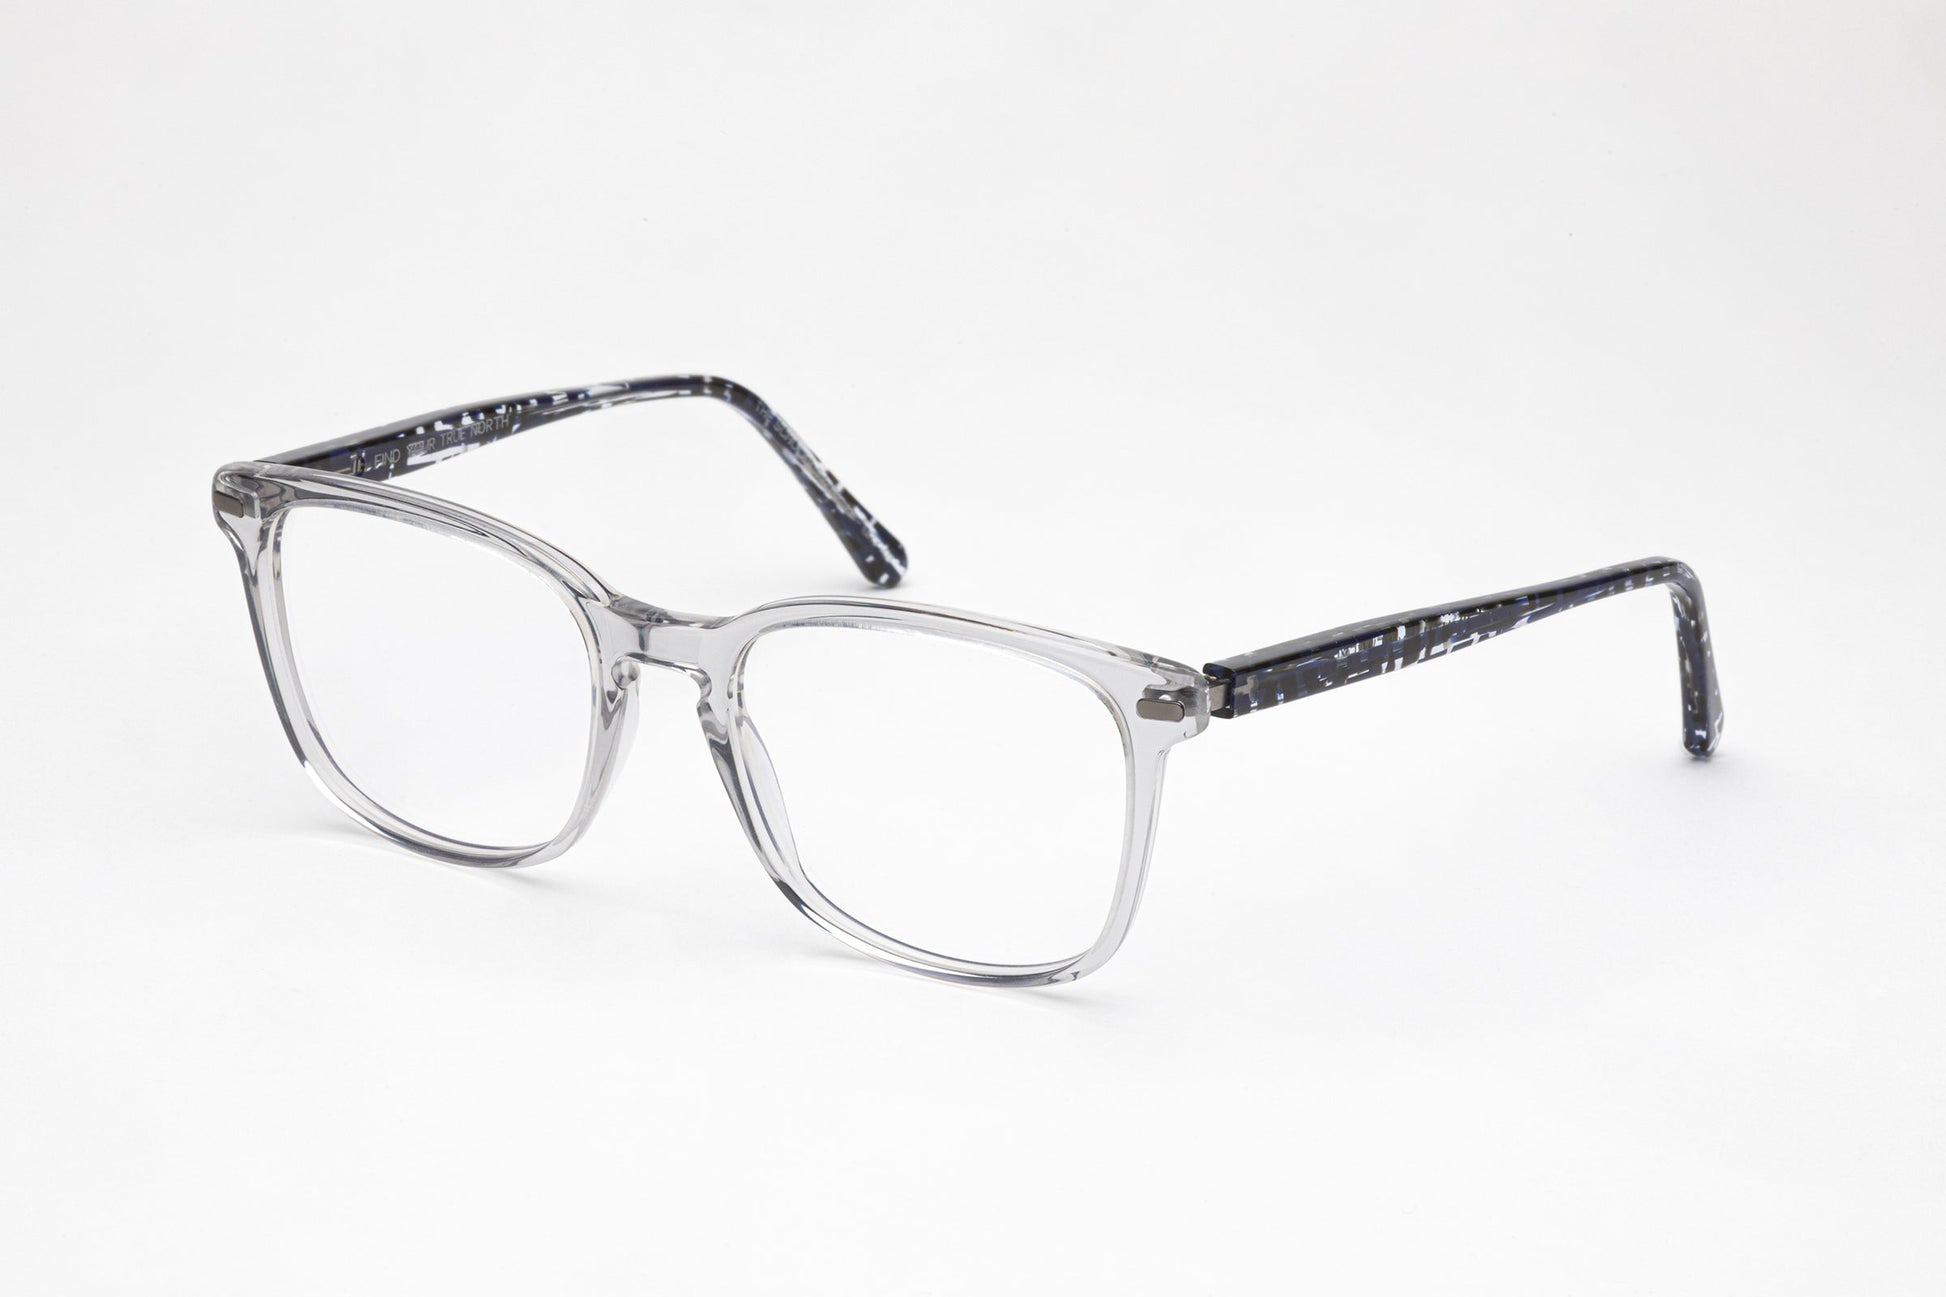 Angled View - The Scholar 3 | Transparent Grey Acetate Frame – Square Designer Prescription Glasses - Low Nose Bridge